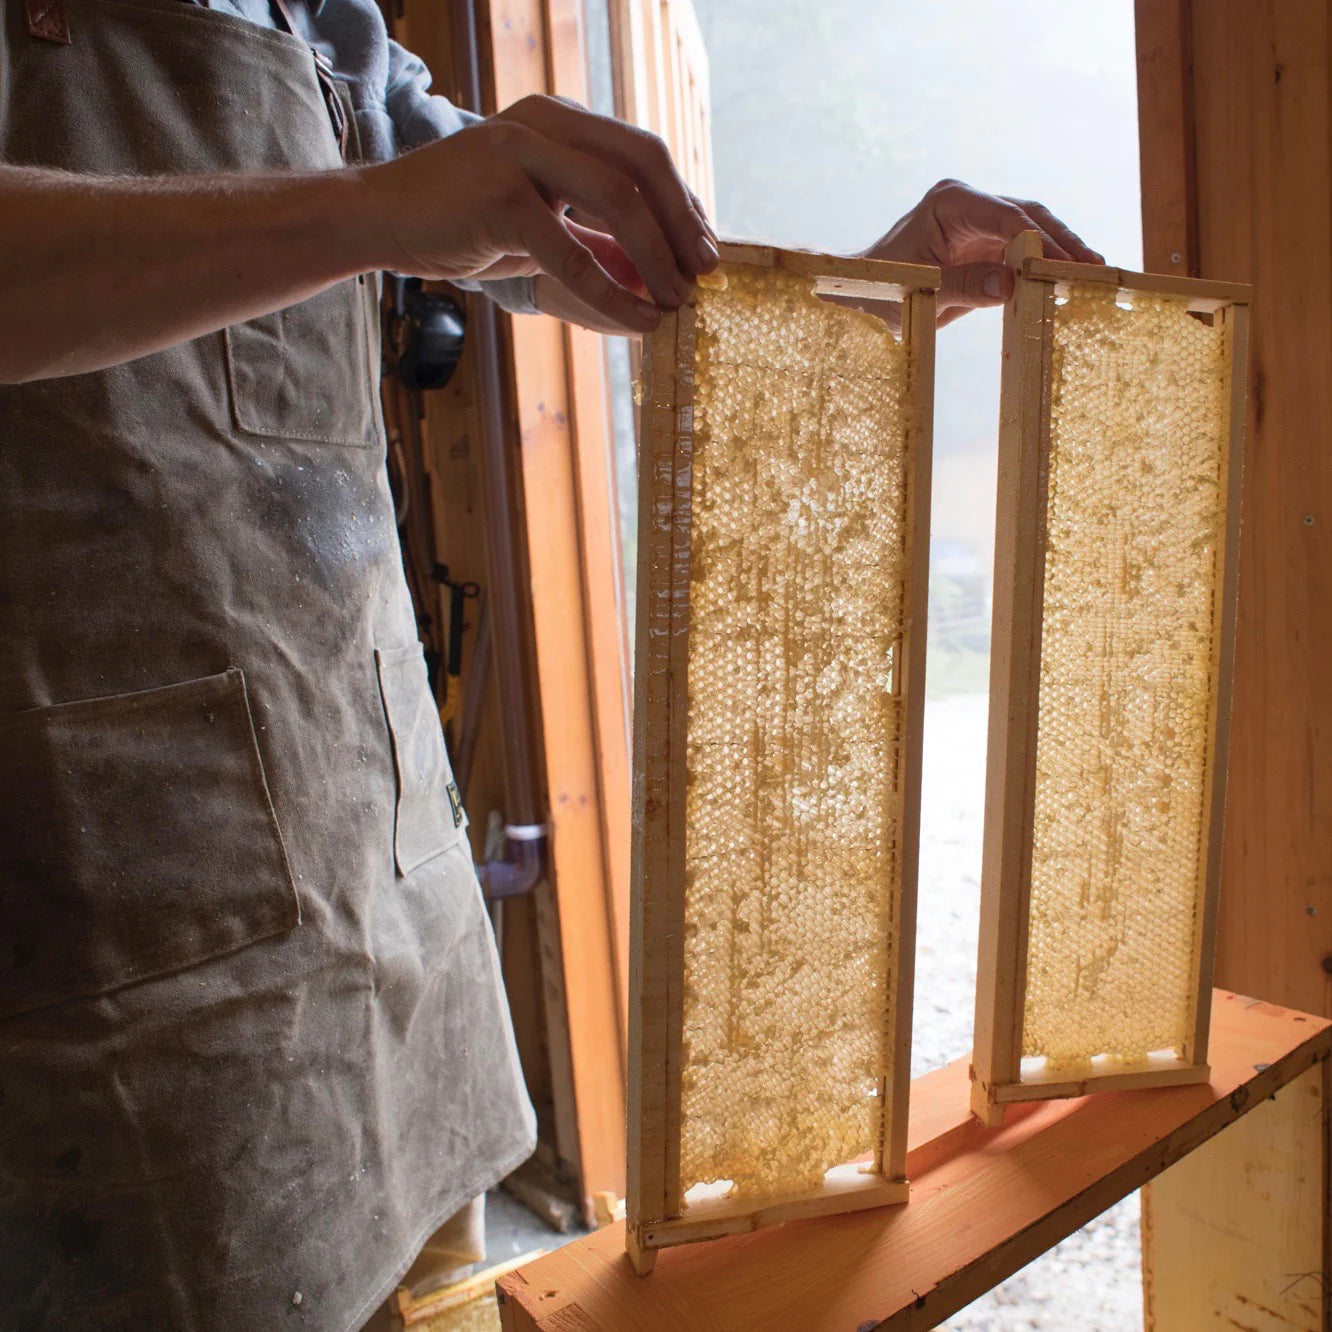 Vermont Raw Honey - 1/2 lb